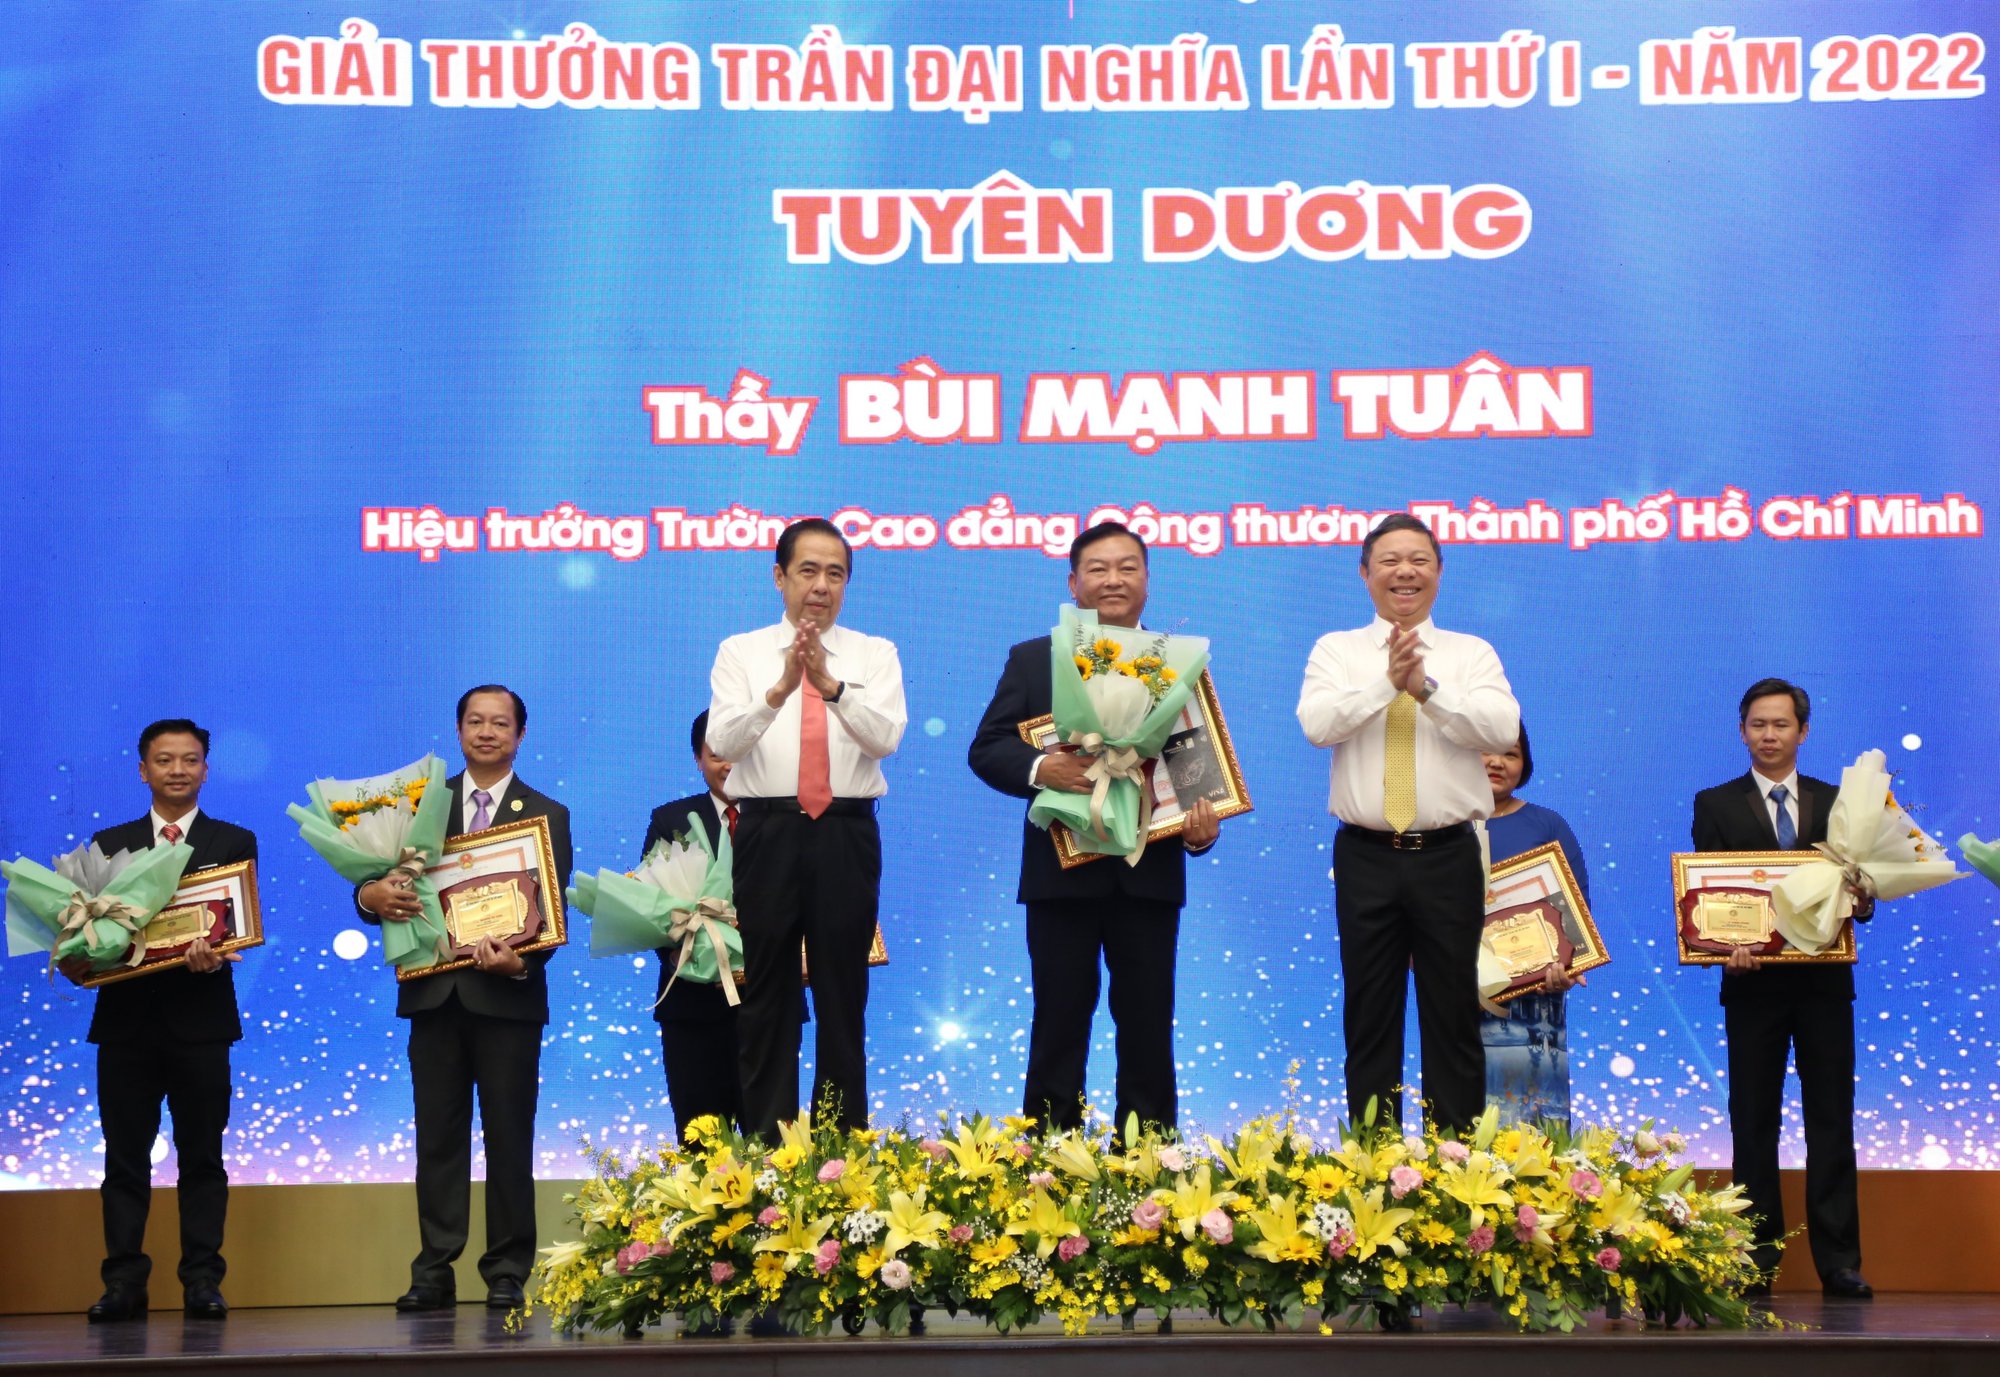 Vinh danh 12 nhà giáo, cán bộ quản lý đoạt giải thưởng Trần Đại Nghĩa lần thứ nhất - Ảnh 1.